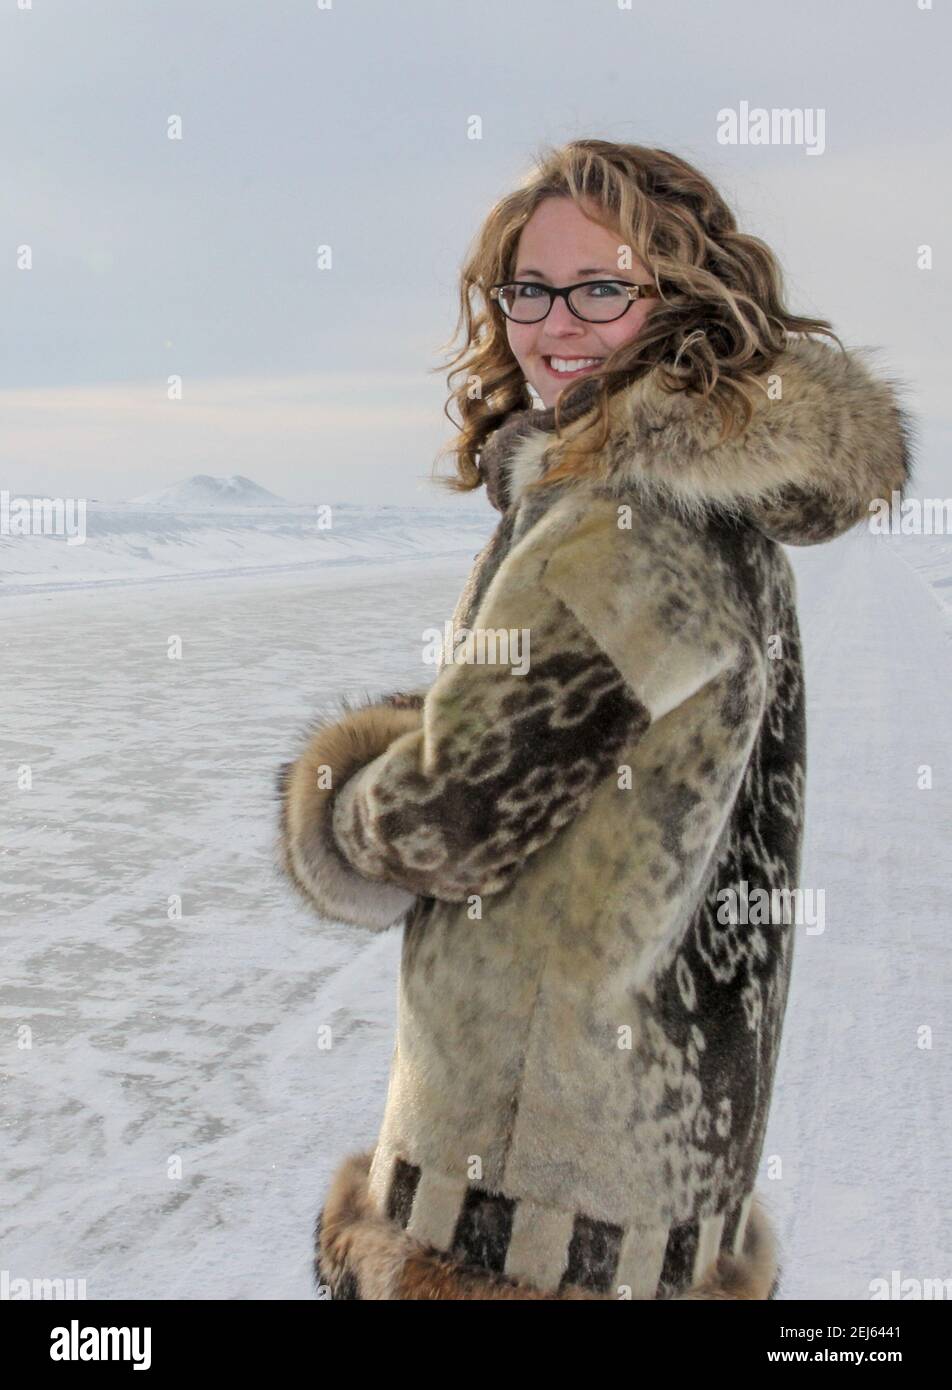 Femme caucasienne dans ses 30 ans, vêtue de parka traditionnelle inuit à fourrure de peau de phoque, debout sur la route de glace de l'océan Arctique, Territoires du Nord-Ouest, Canada. Banque D'Images